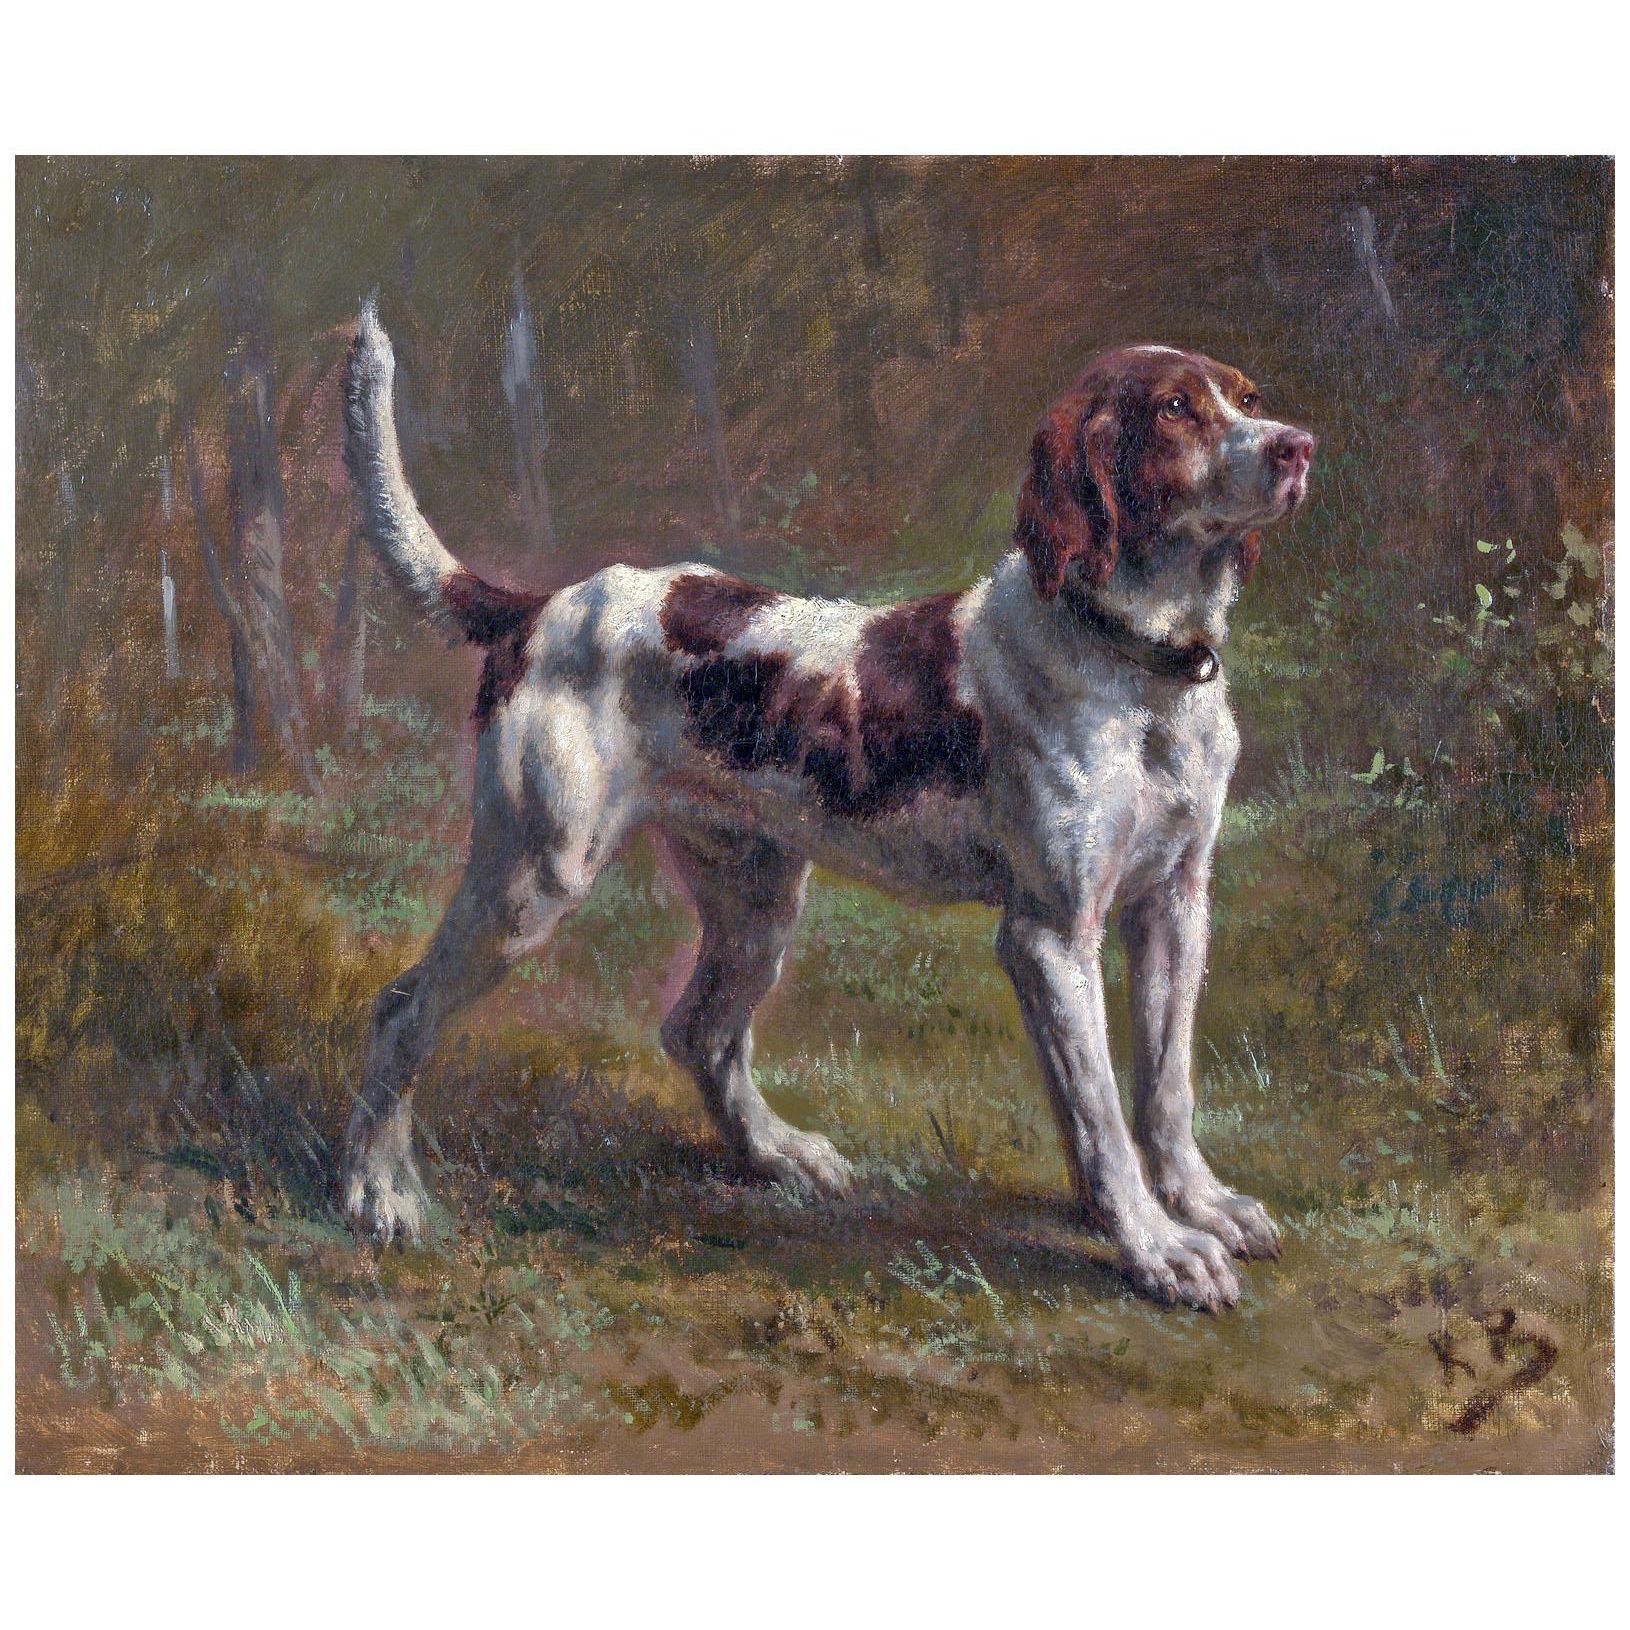 Rosa Bonheur. Le chien de Vicomte d'Armaille. 1856. Metropolitan Museum NY